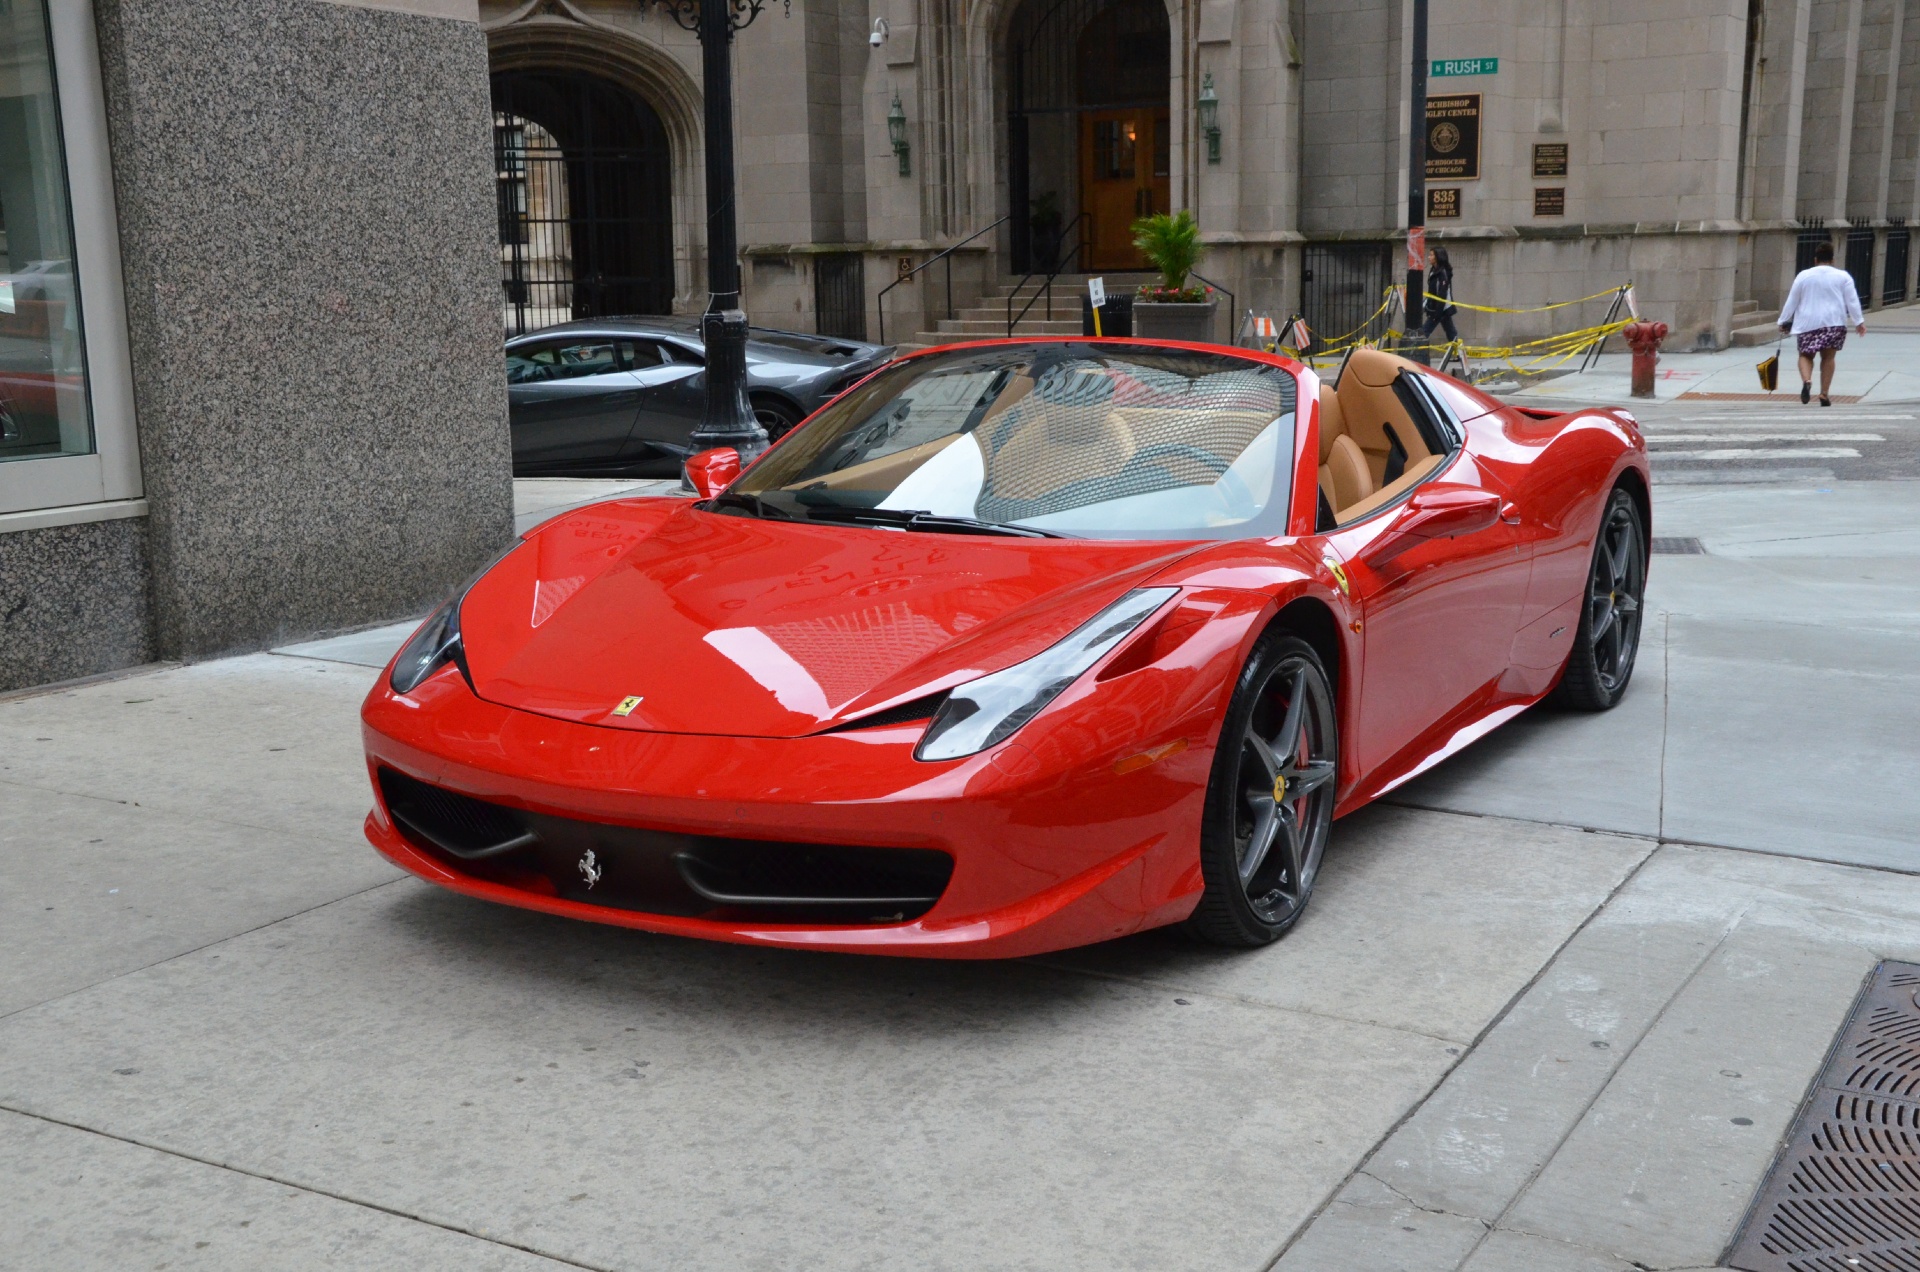 2013 Ferrari 458 Spider Stock L182a For Sale Near Chicago